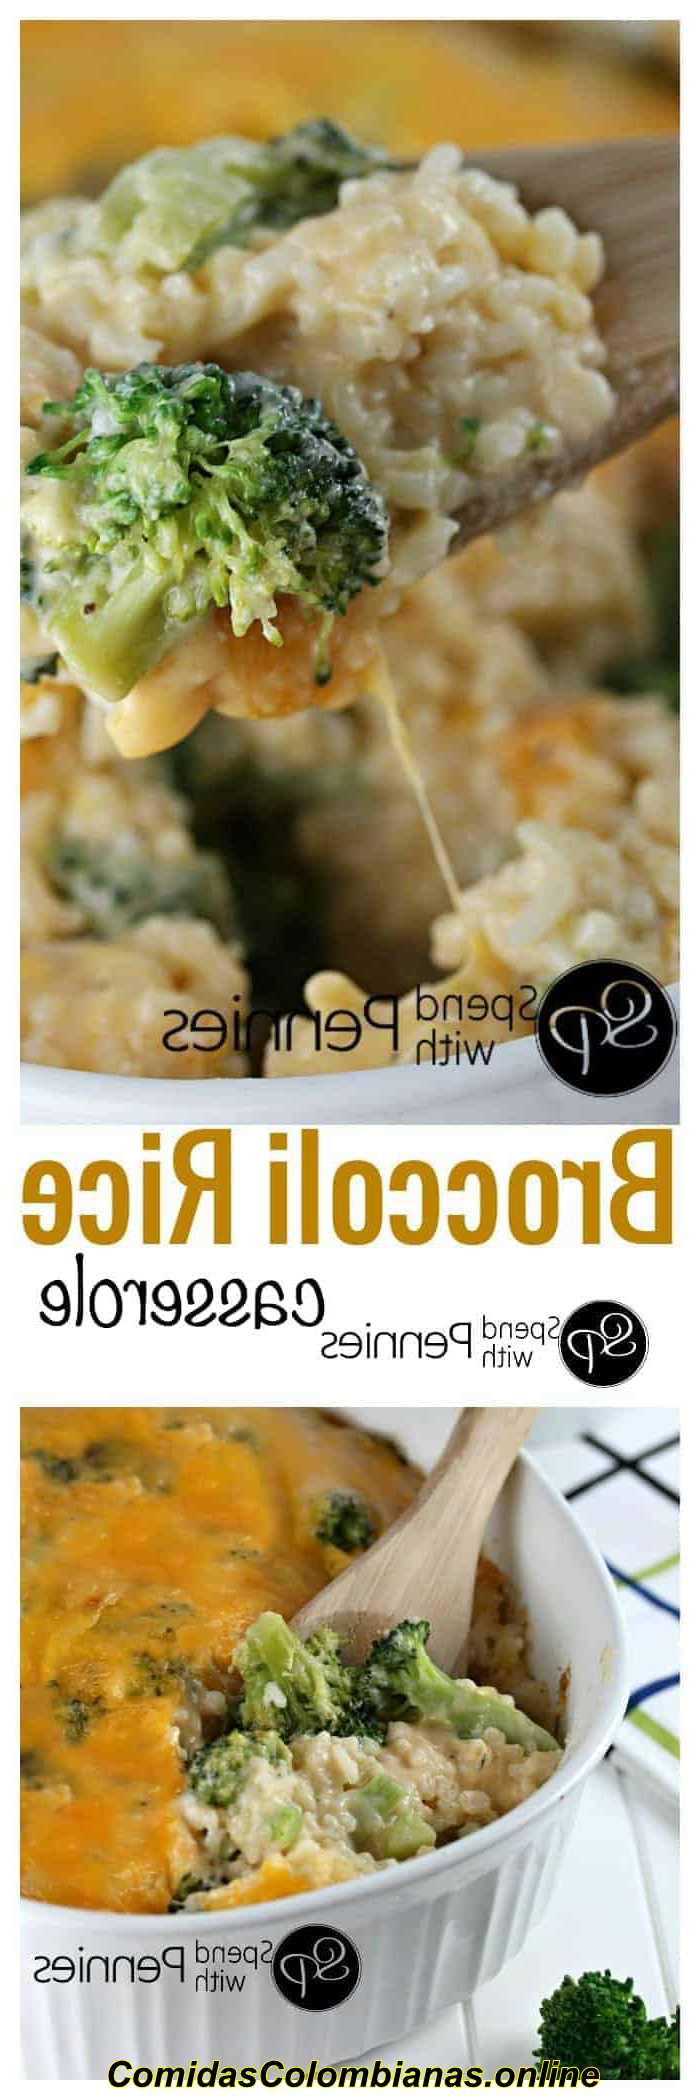 상단 이미지: 브로콜리 쌀 캐서롤이 제공됩니다. 하단 이미지: 필기로 준비한 브로콜리 쌀 캐서롤.